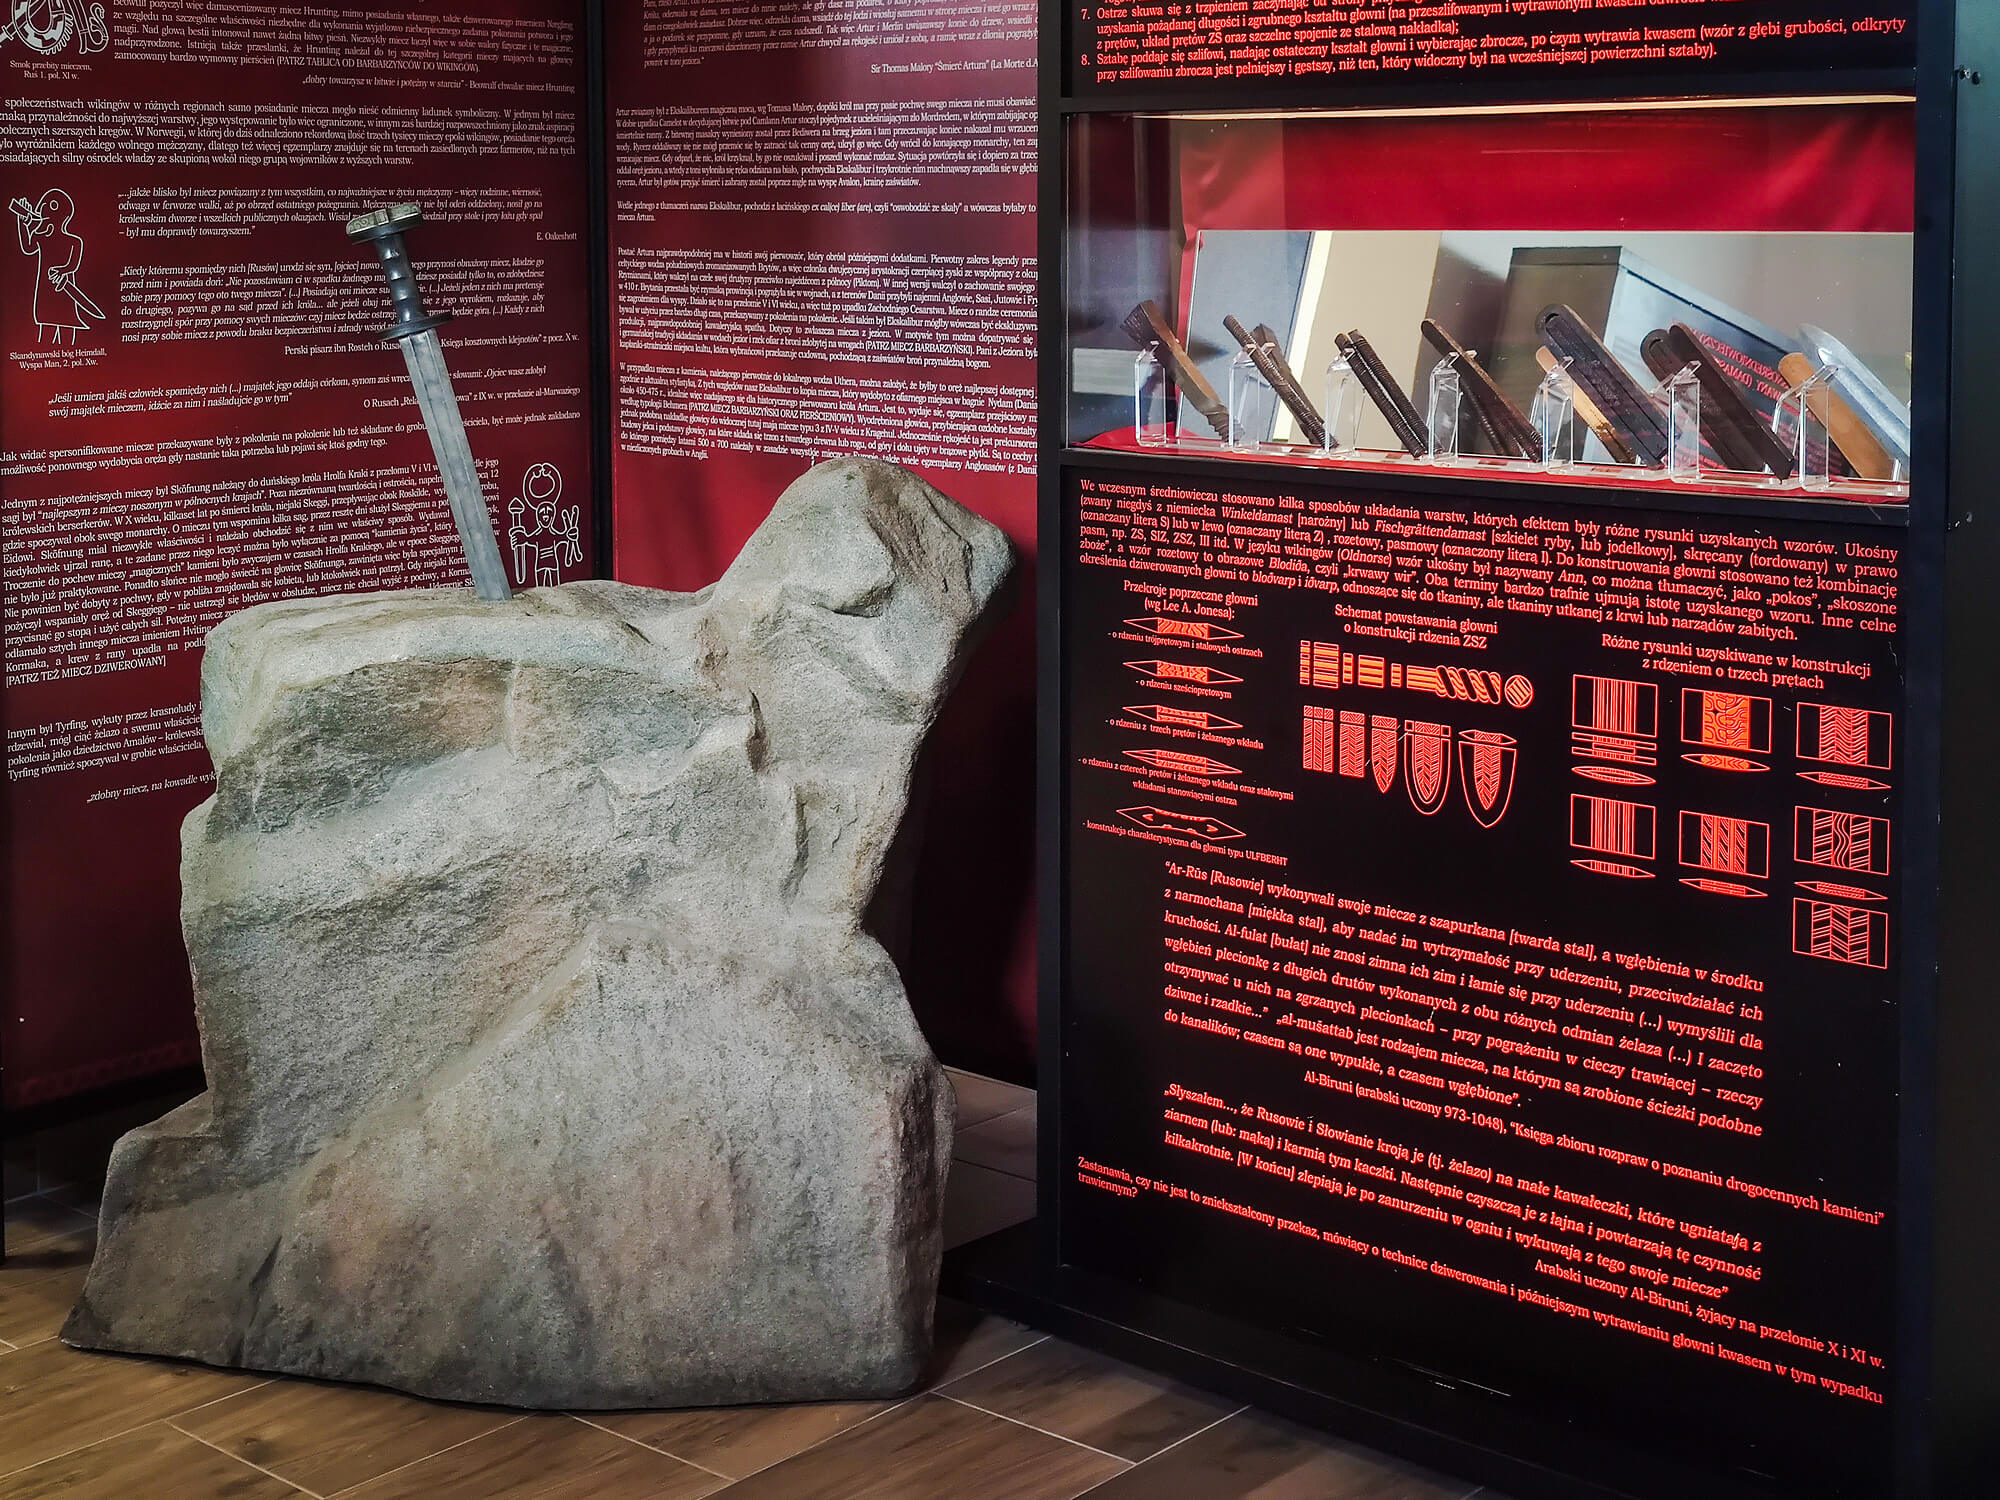 Fragment ekspozycji z instalacją "Ekskalibur". Miecz wbity w realistyczną imitację głazu. W tle plansze wystawowe, czarne z czerwonymi napisami. Po prawej szklana gablota z eksponatami: kawałkami ostrzy.